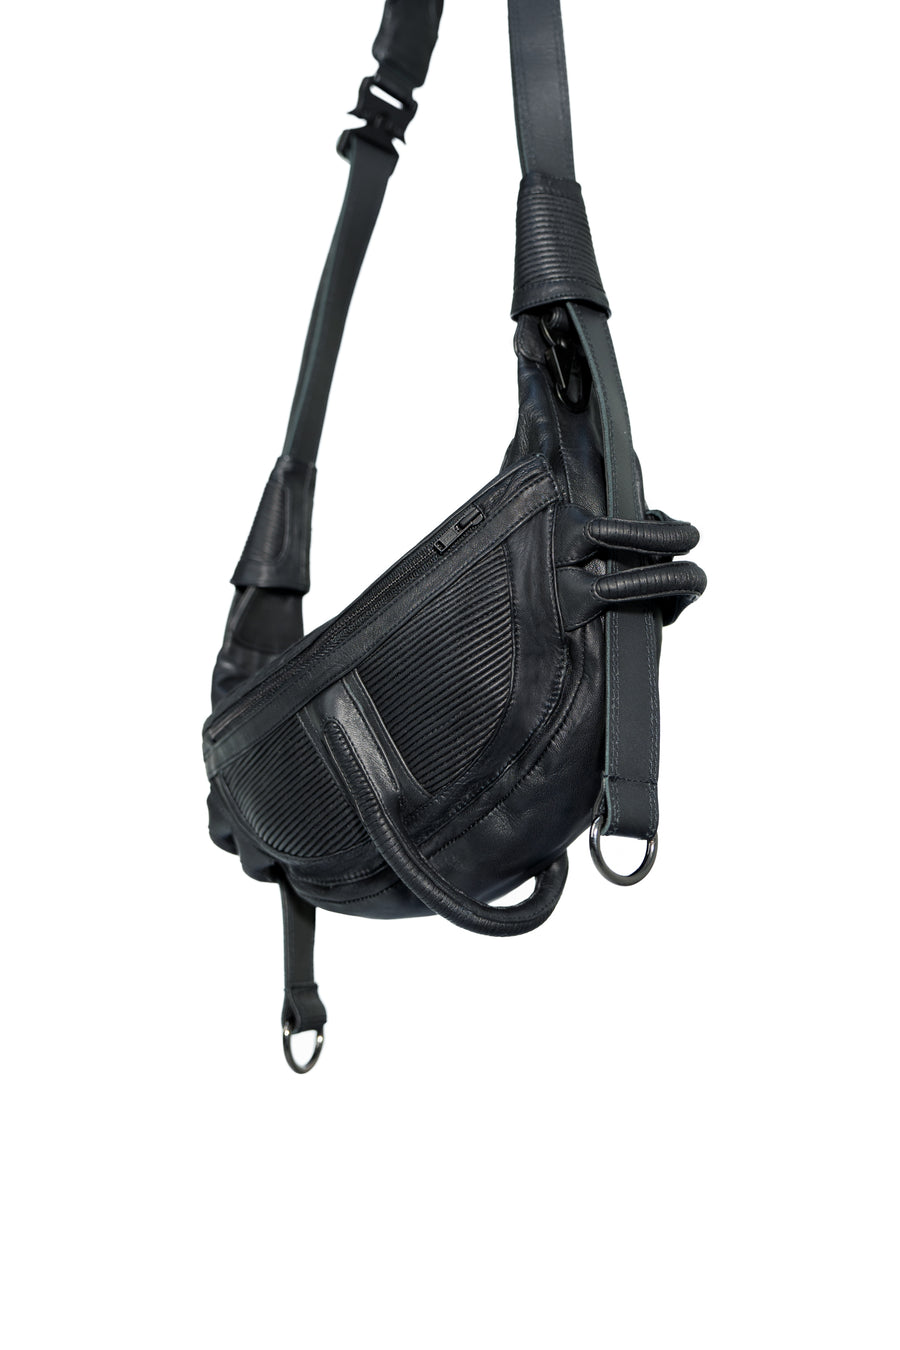 KLEOS-511 Shoulder Bag